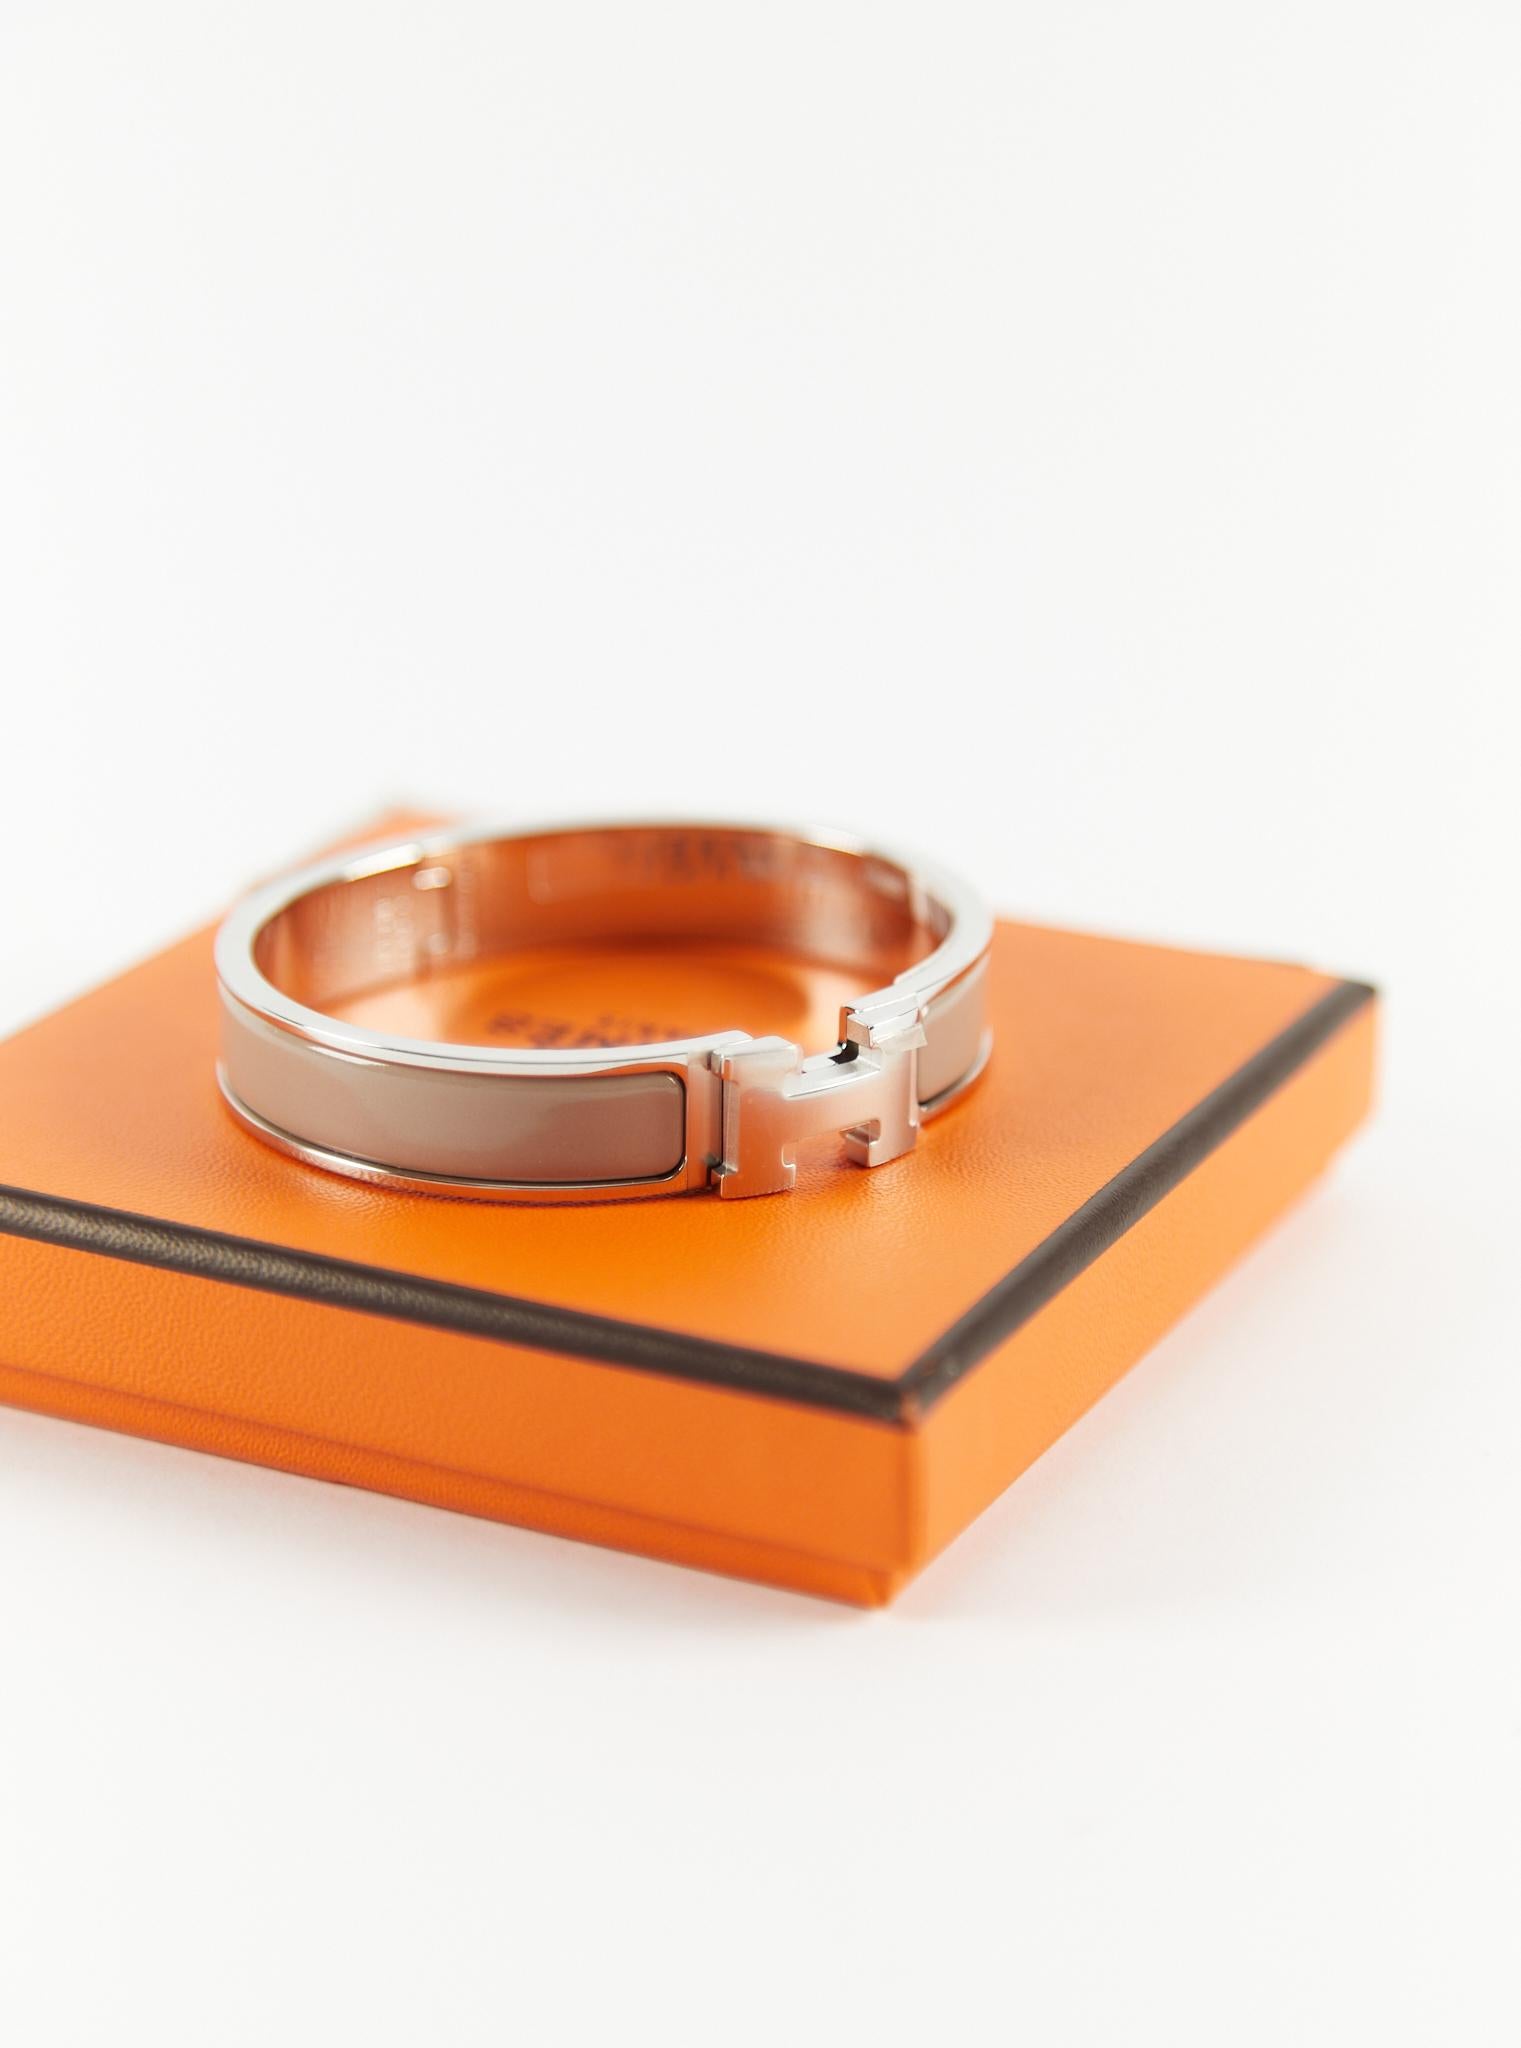 Hermès  Clic H GM-Armband aus Marron Glace & Palladium

Größe des Handgelenks: 16.8 cm  Breite: 8 mm

Hergestellt in Frankreich

